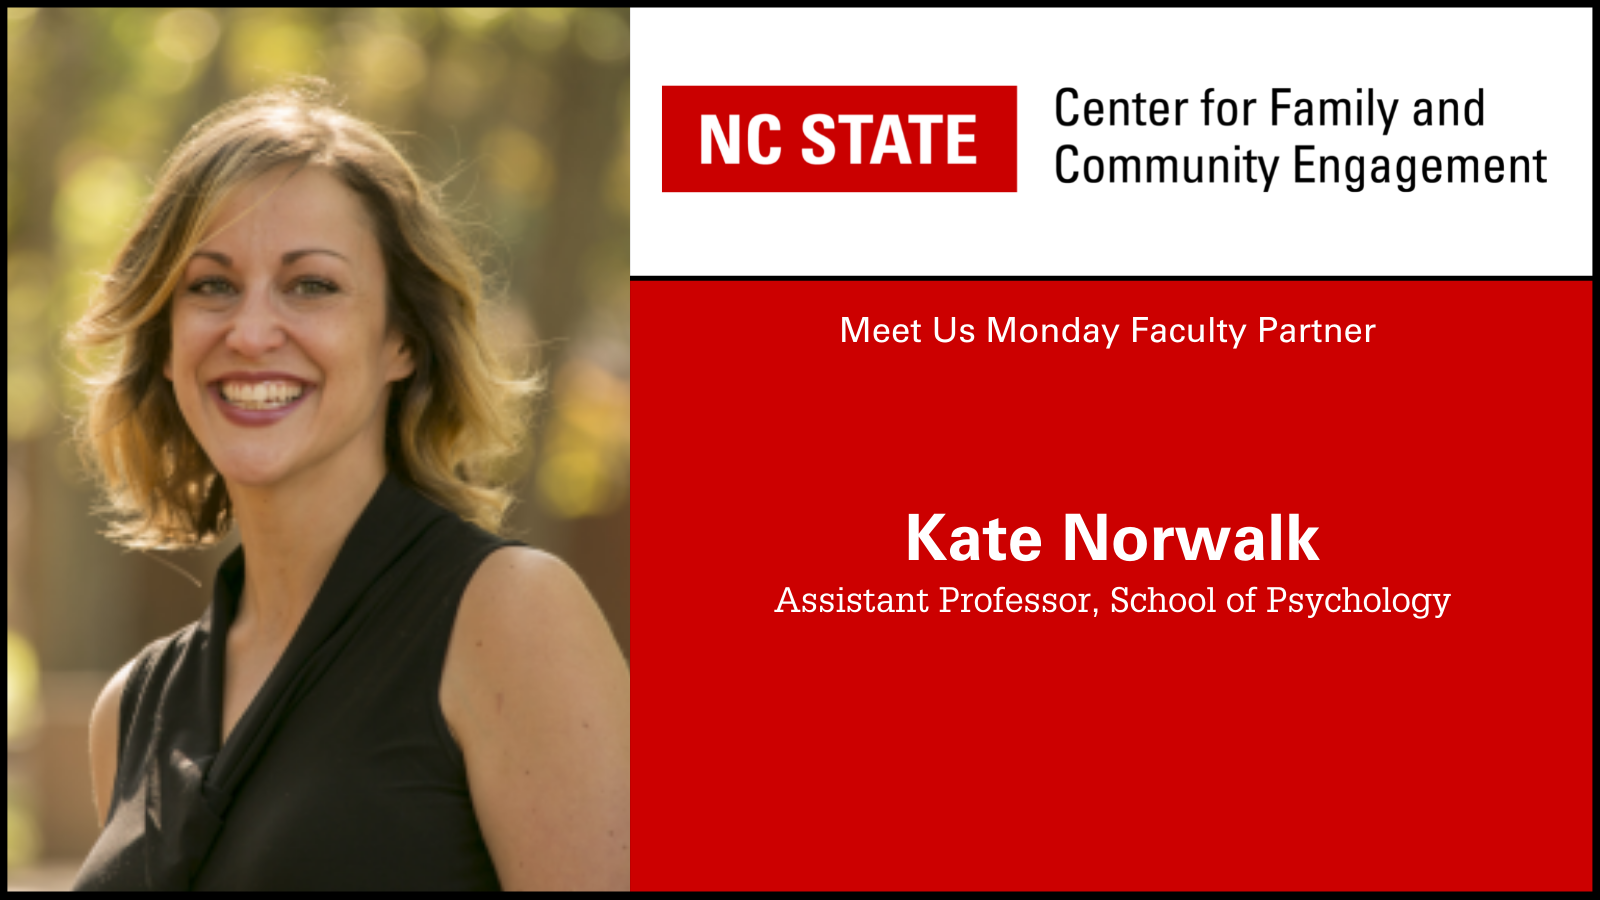 Meet Kate Norwalk